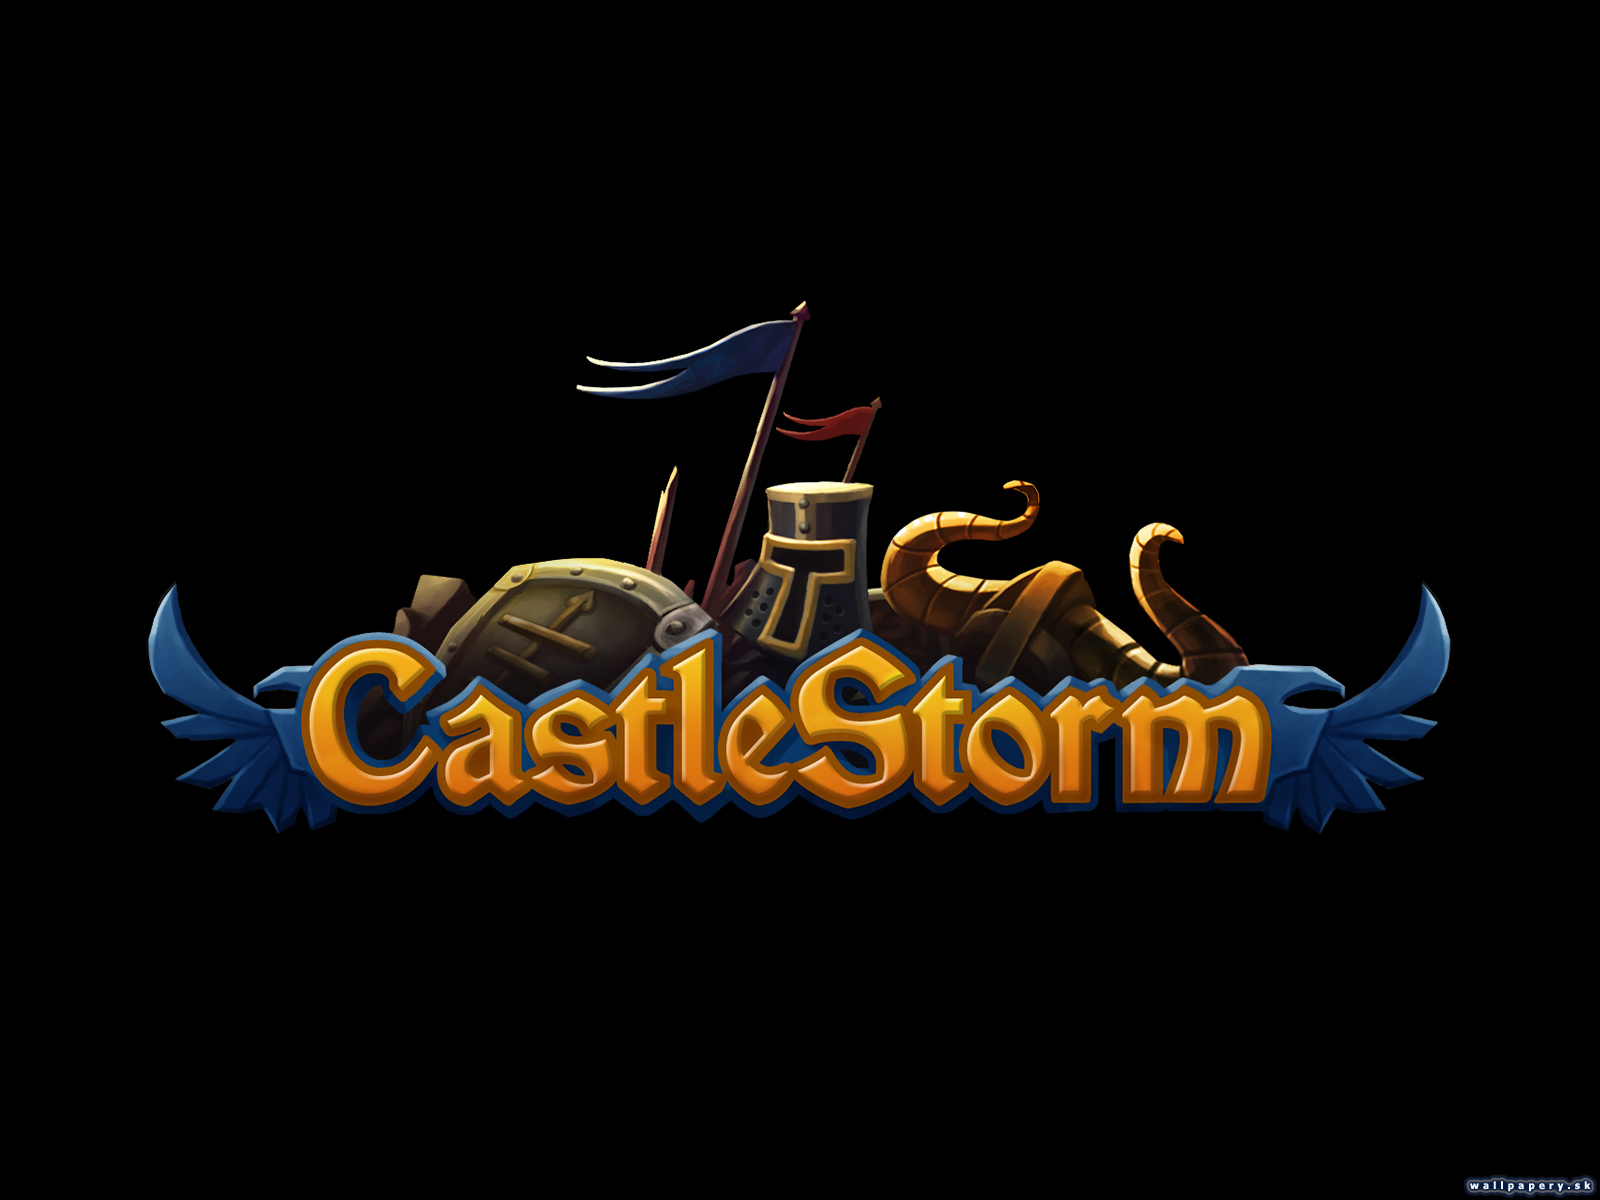 CastleStorm - wallpaper 4